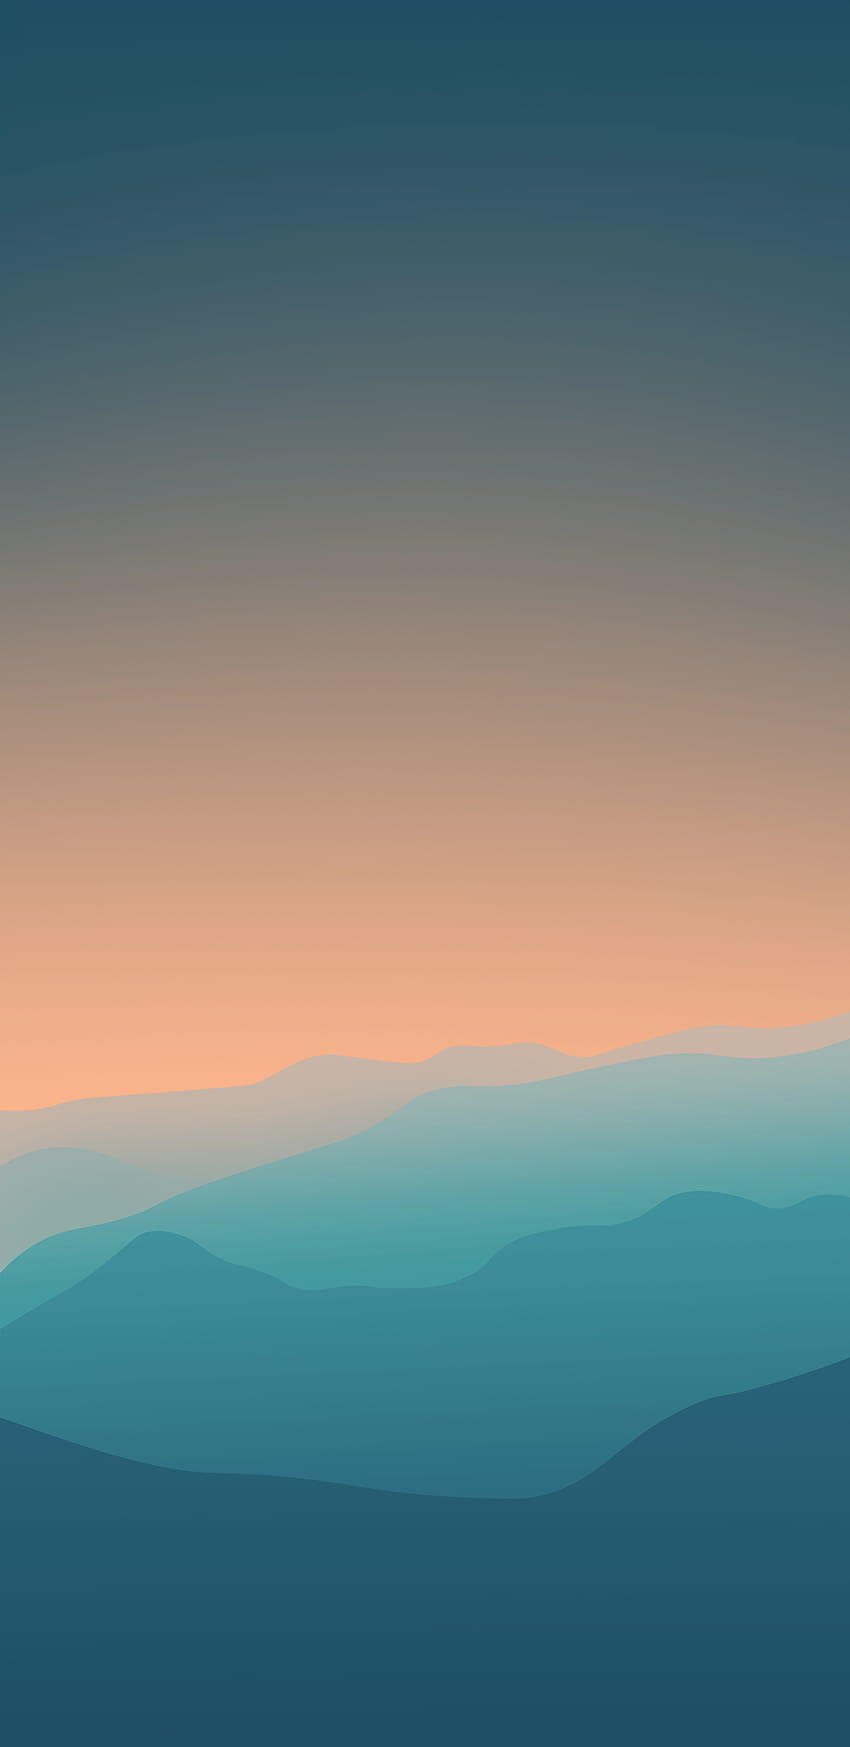 de la semana: teléfono de montañas al atardecer, montañas naranjas y azules fondo de pantalla del teléfono